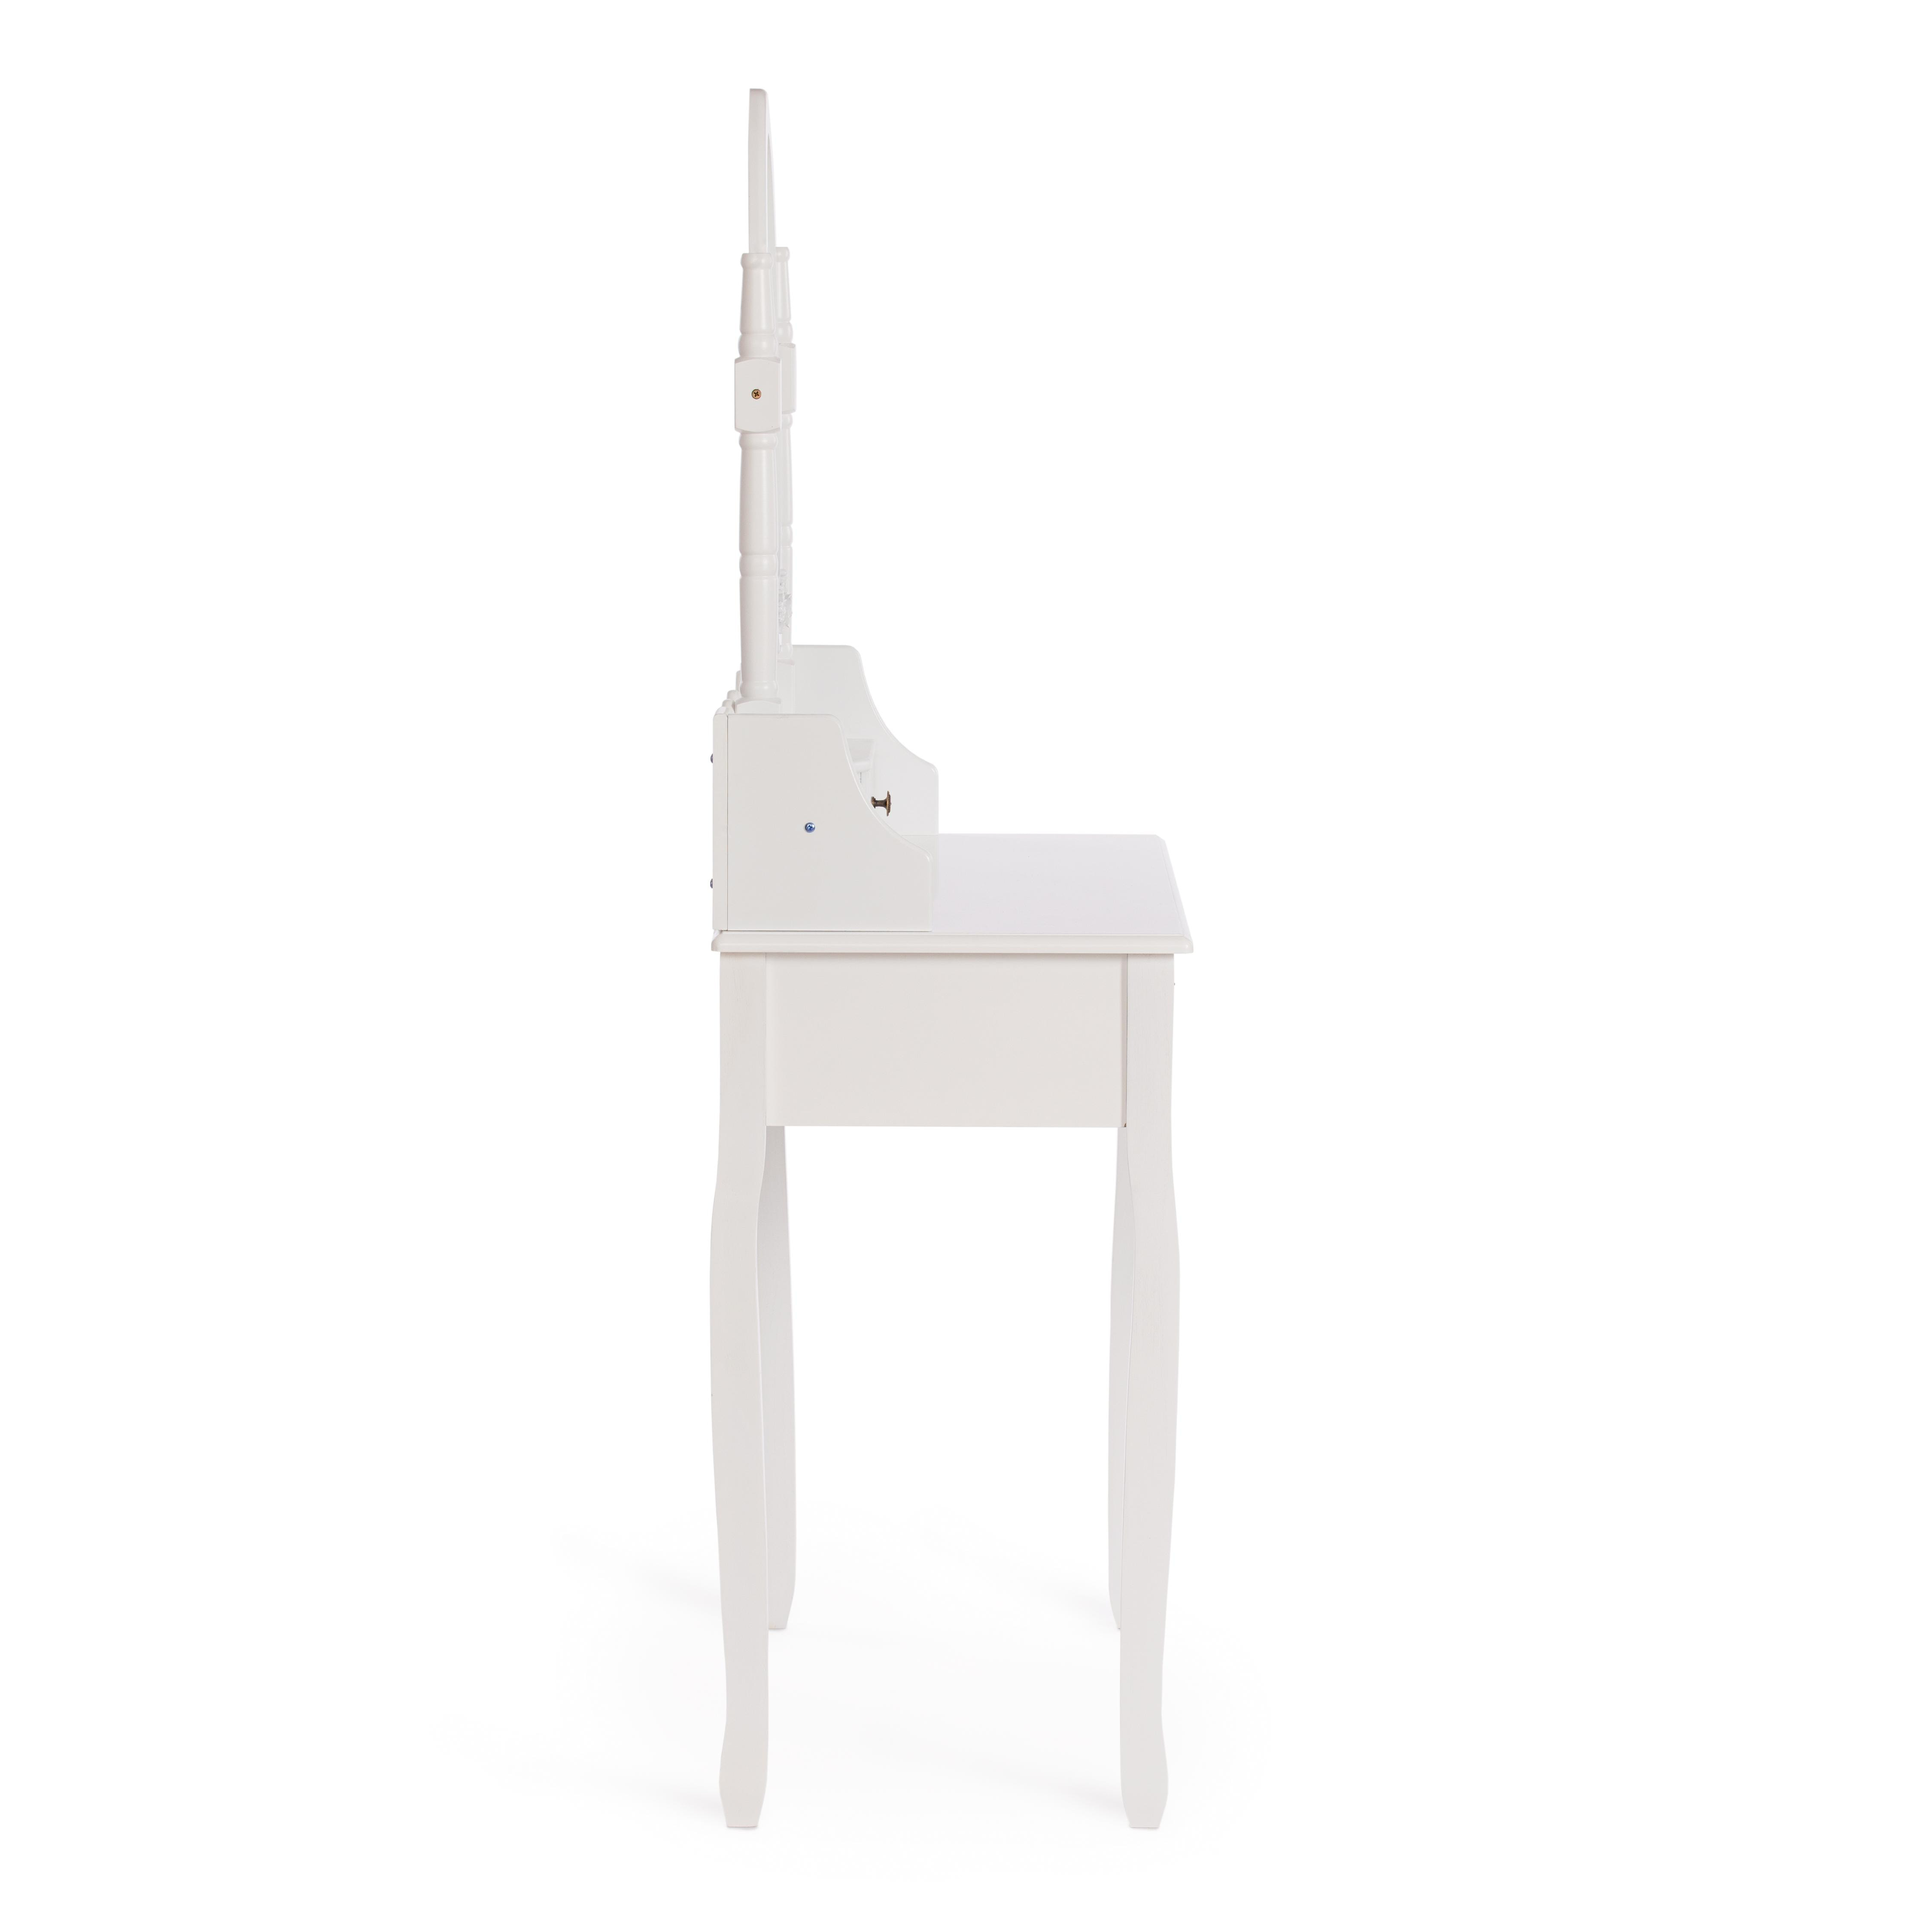 Туалетный столик с зеркалом и табуретом Secret De Maison GAUDE (mod. TT-DT003) МДФ+Павловния, 75*40*145, Белый (White)